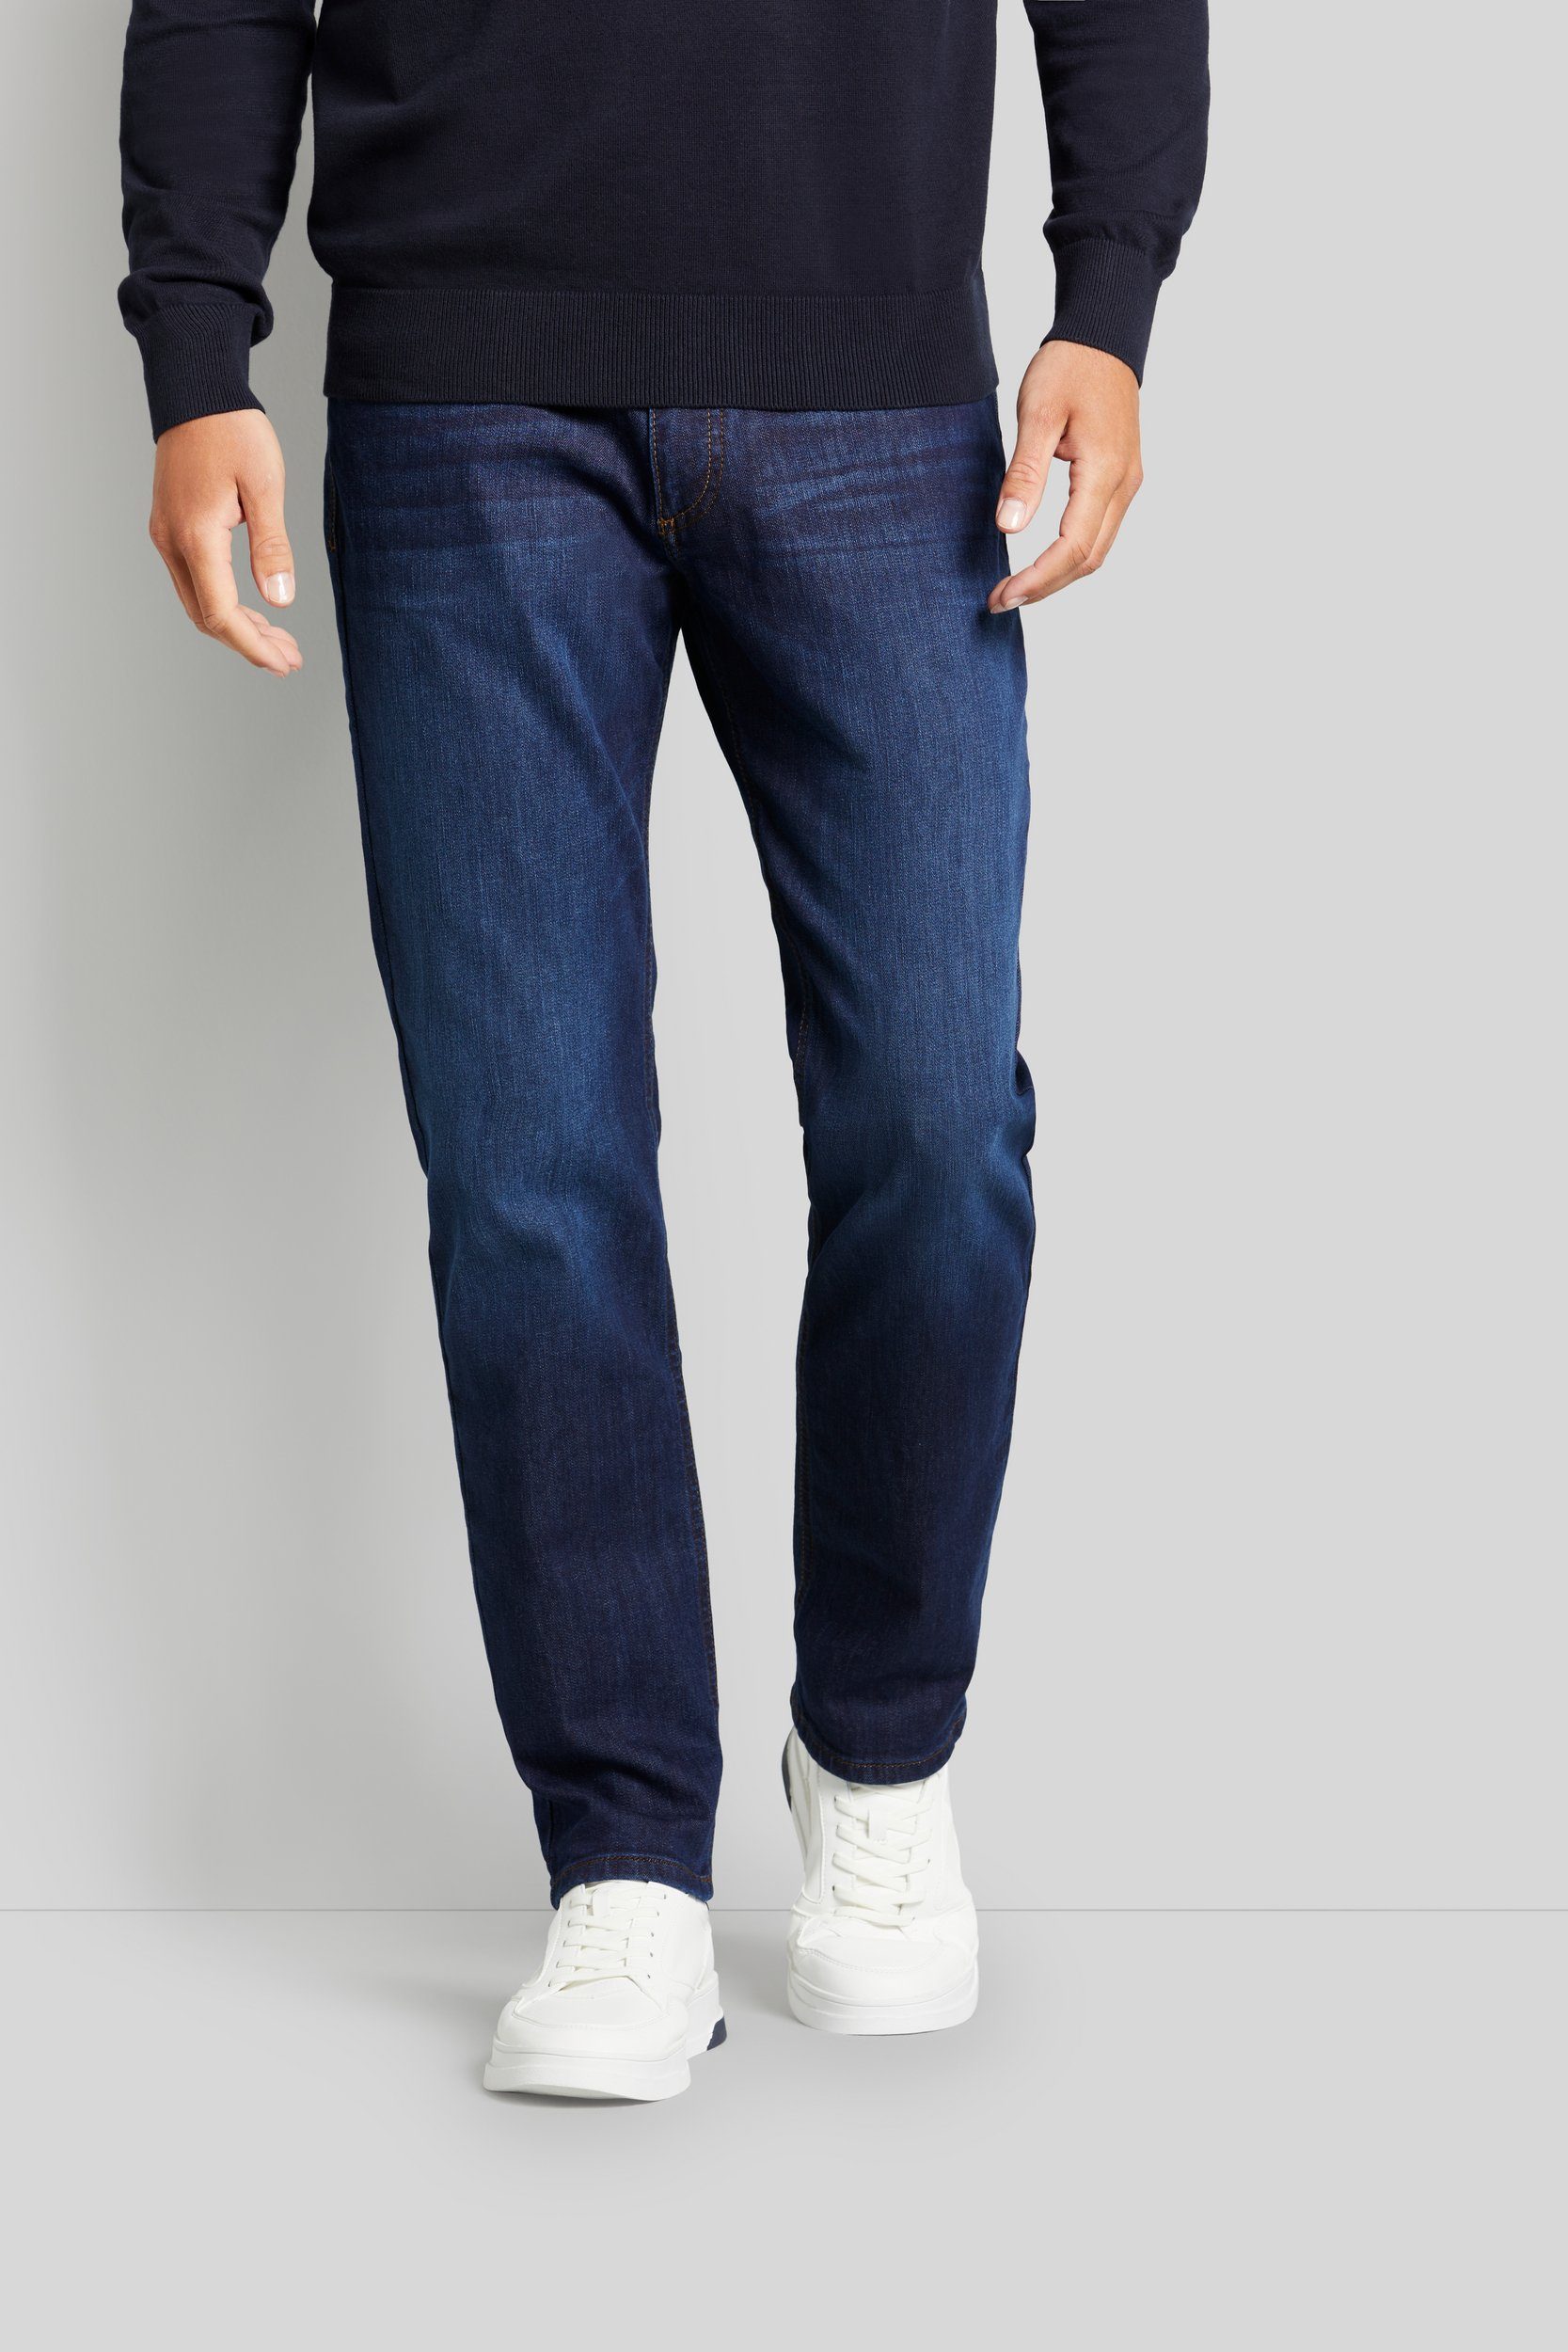 bugatti 5-Pocket-Jeans mit einem leichten Used Look marine